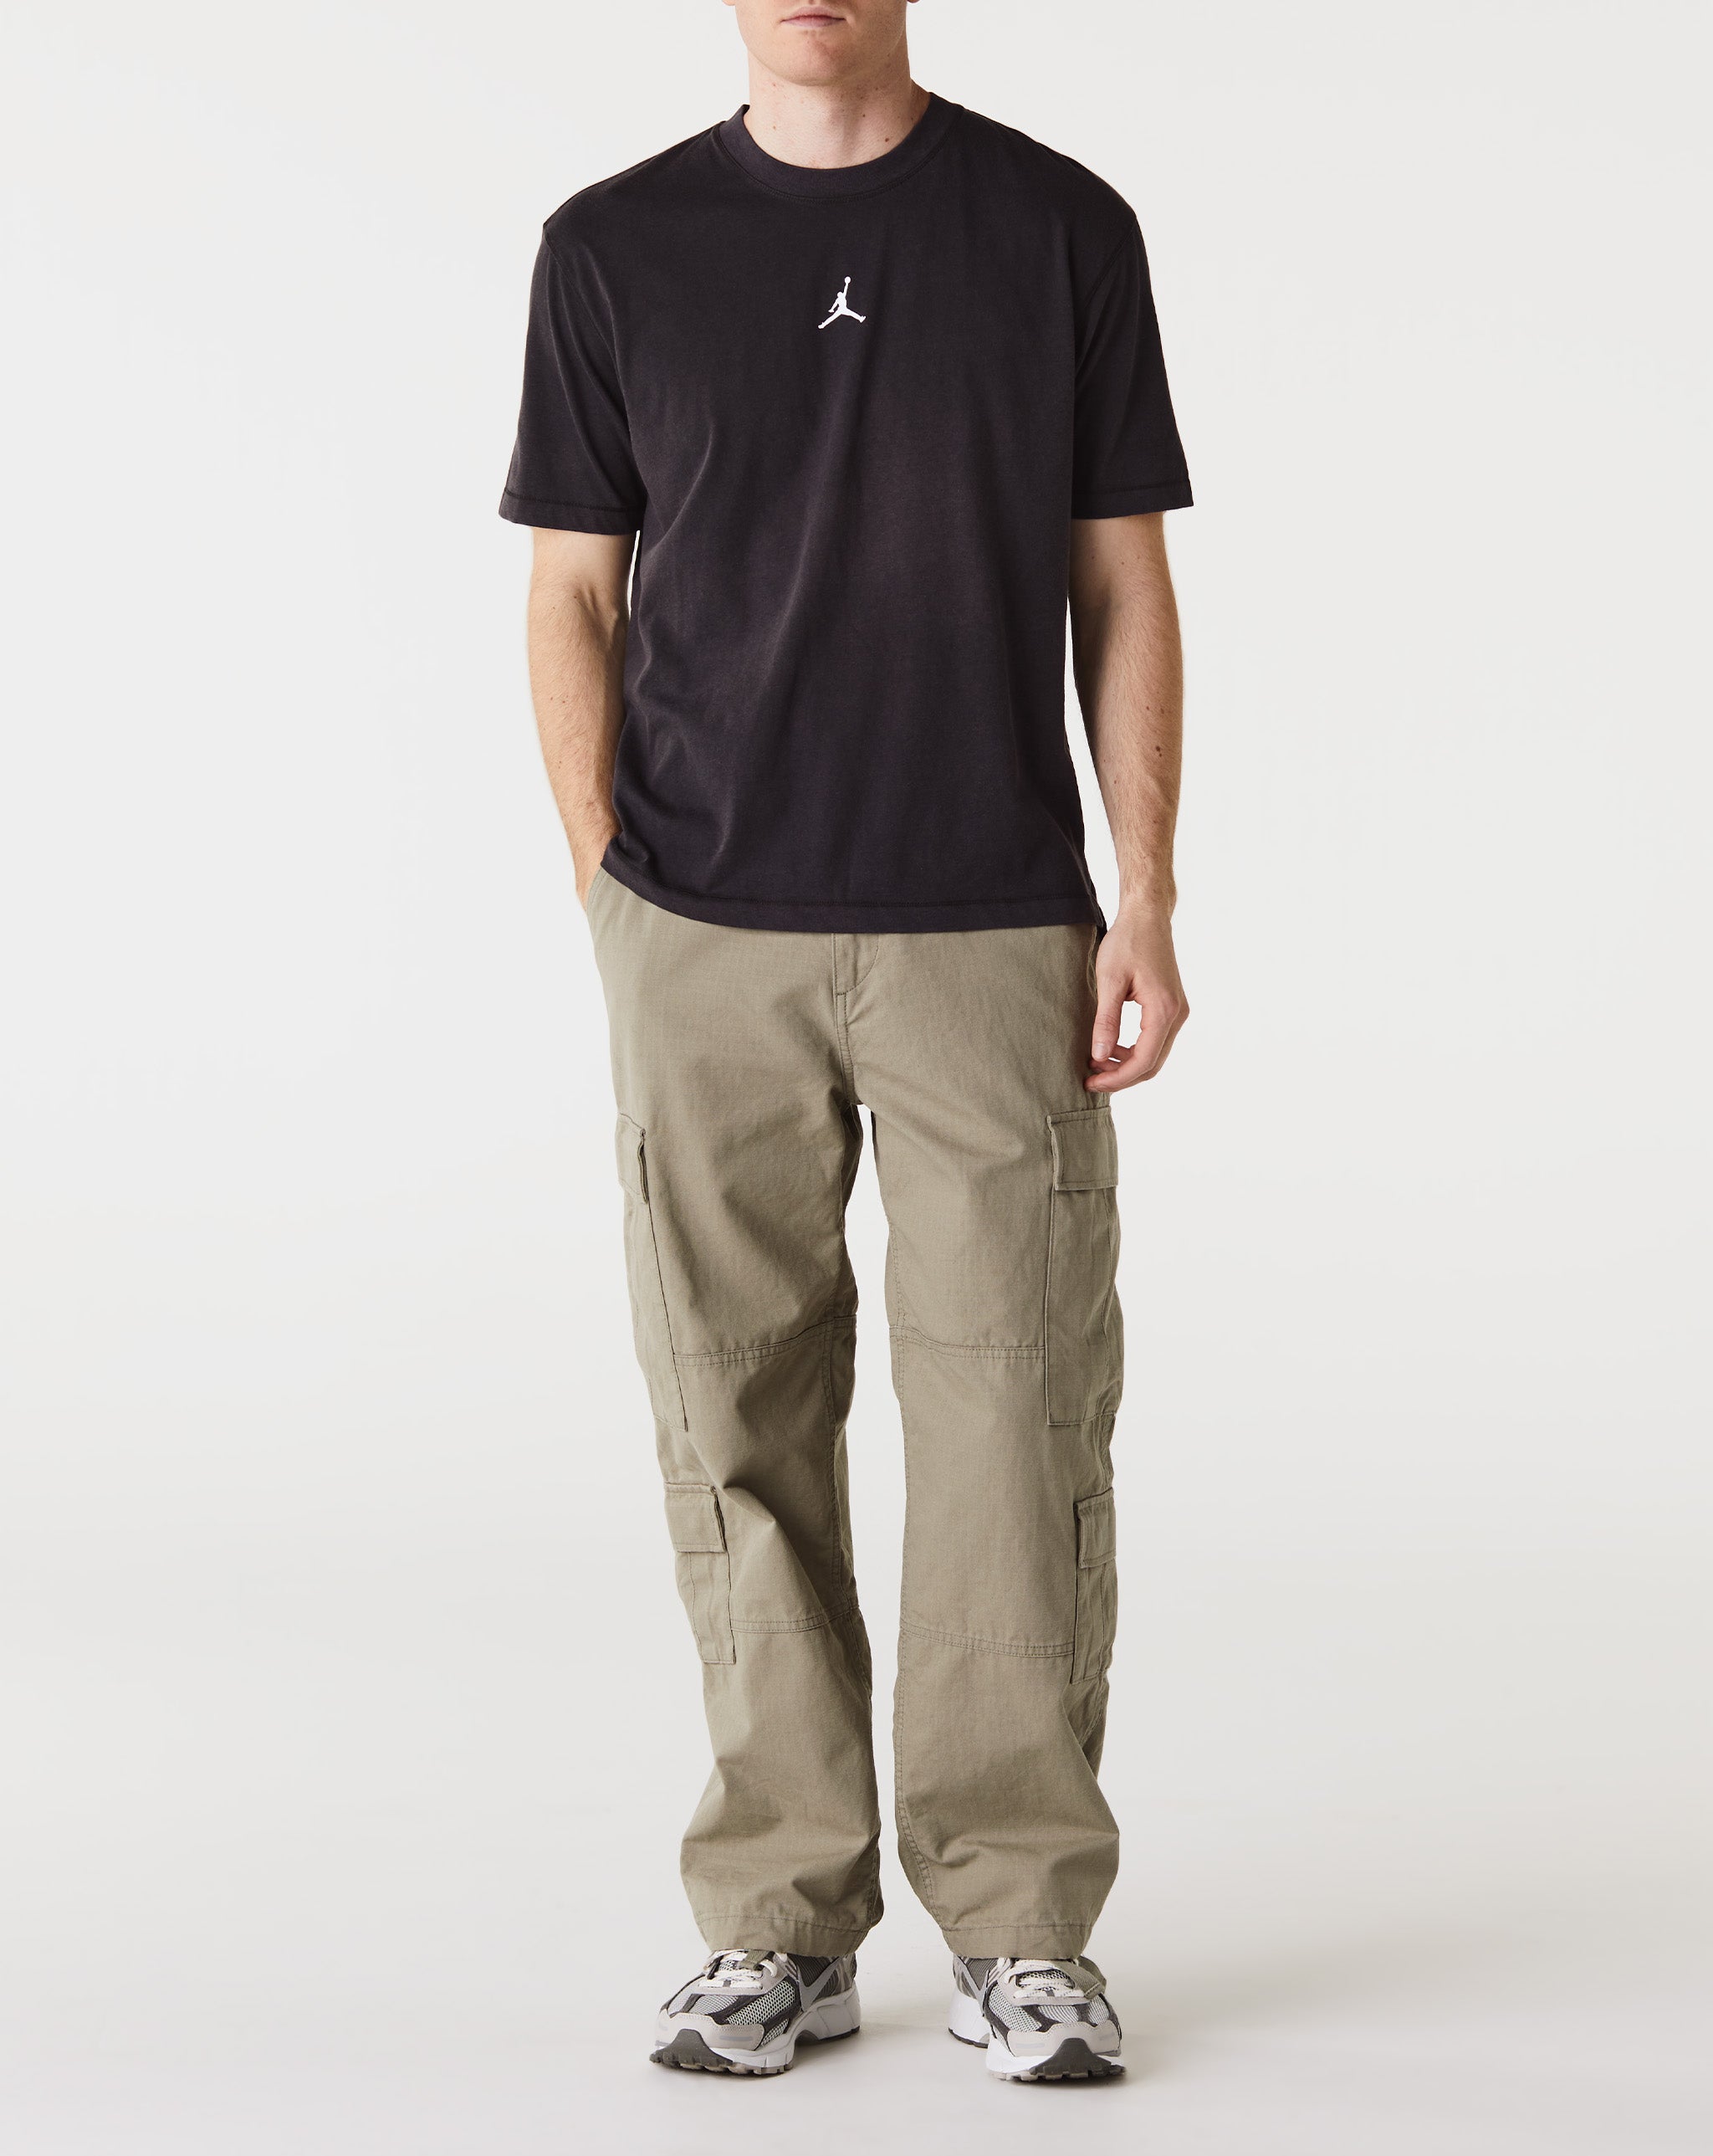 Air Jordan Jordan Dri-FIT Sport T-Shirt - Rule of Next Apparel